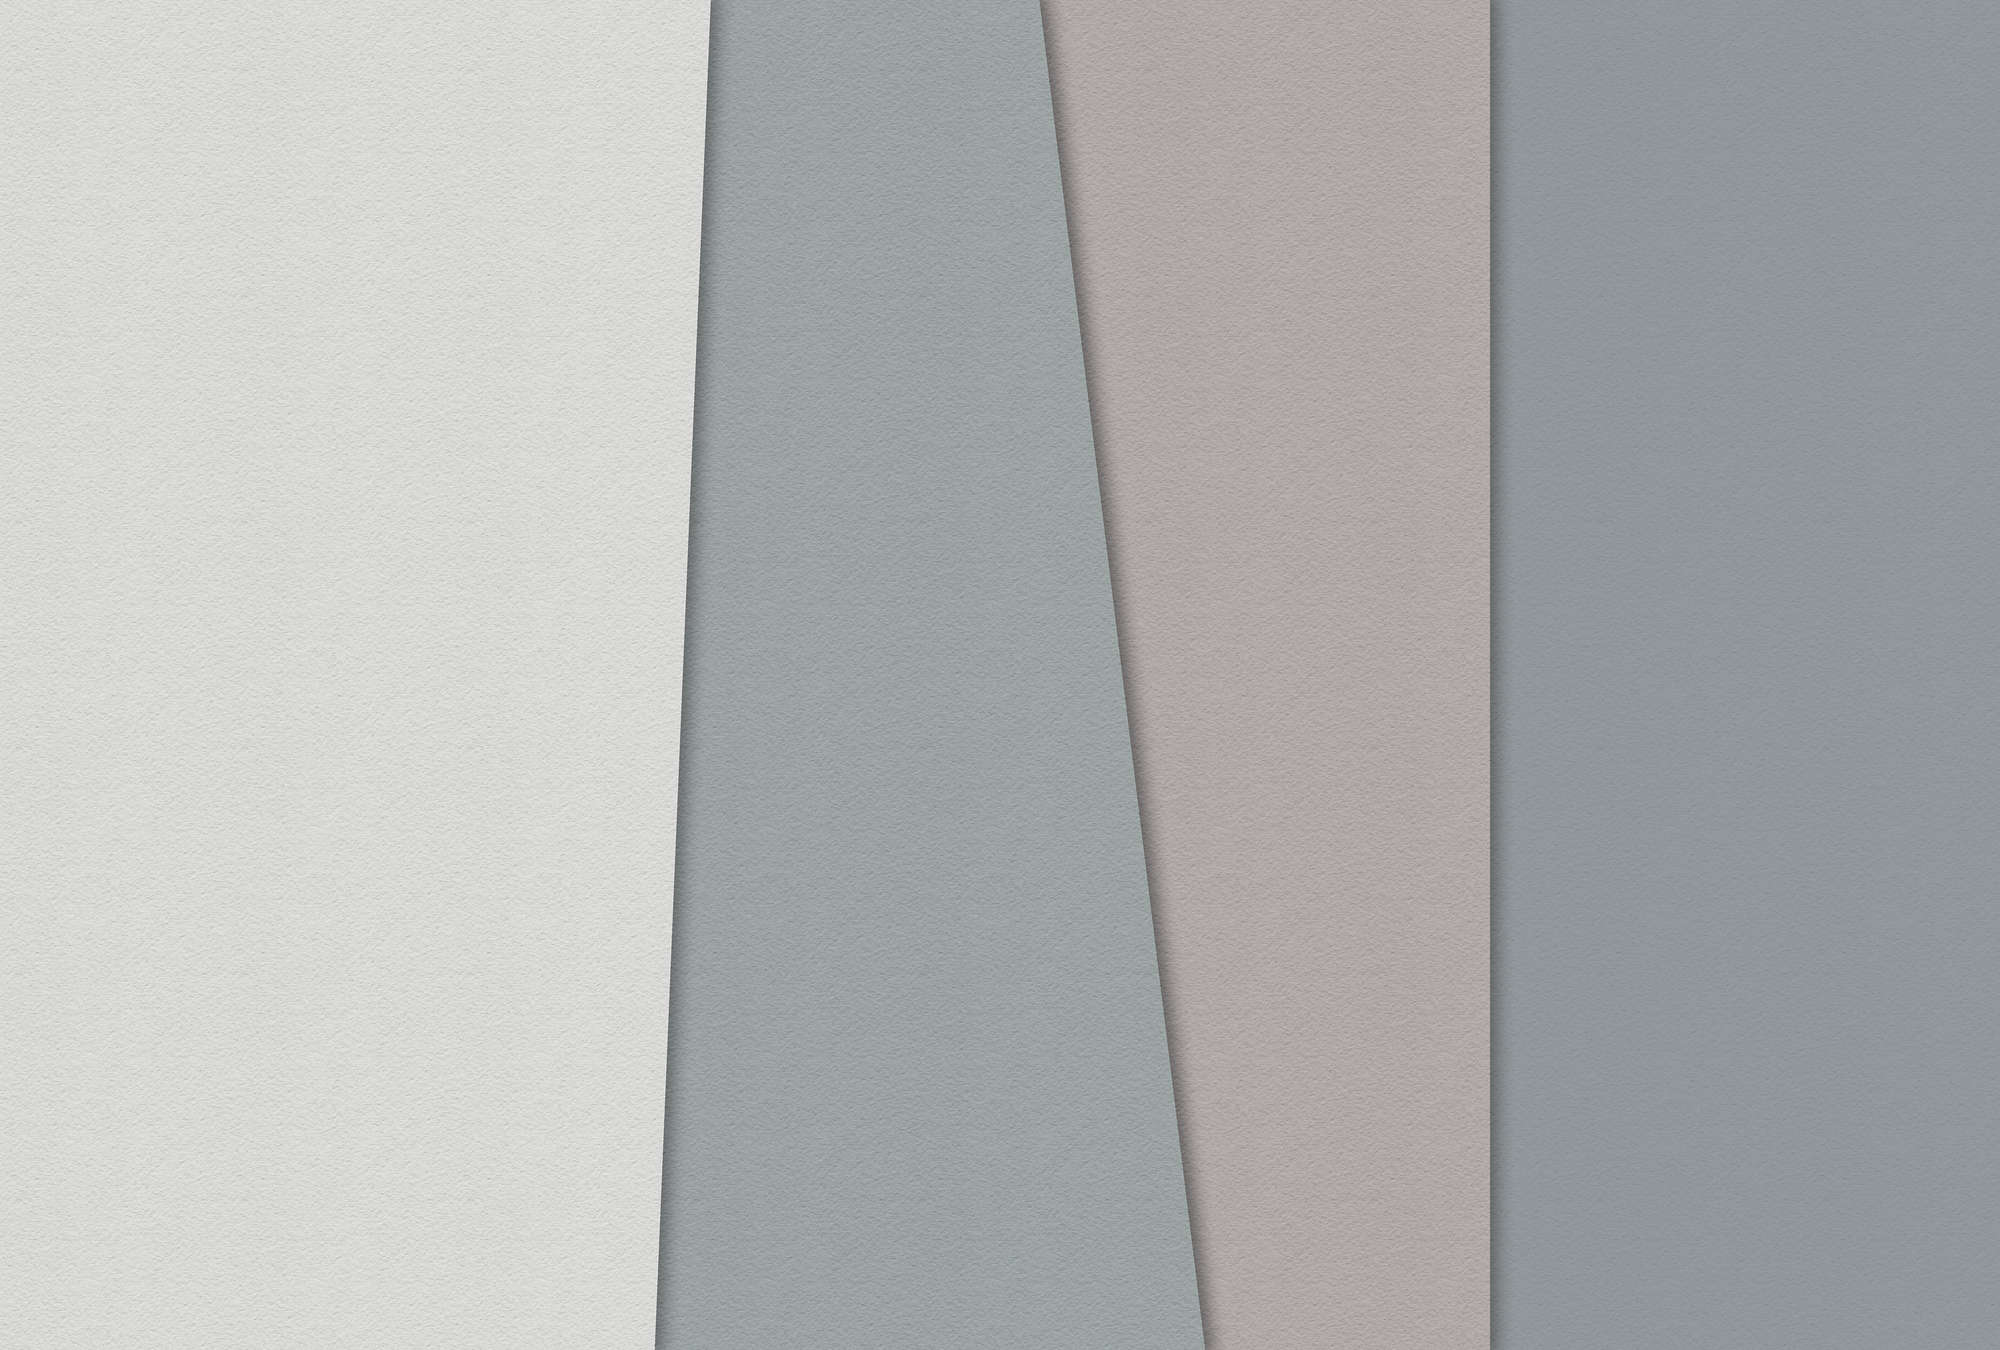             Papel estratificado 1 - Papel pintado gráfico con zonas de color en estructura de papel hecho a mano - Azul, Crema | Vellón liso mate
        